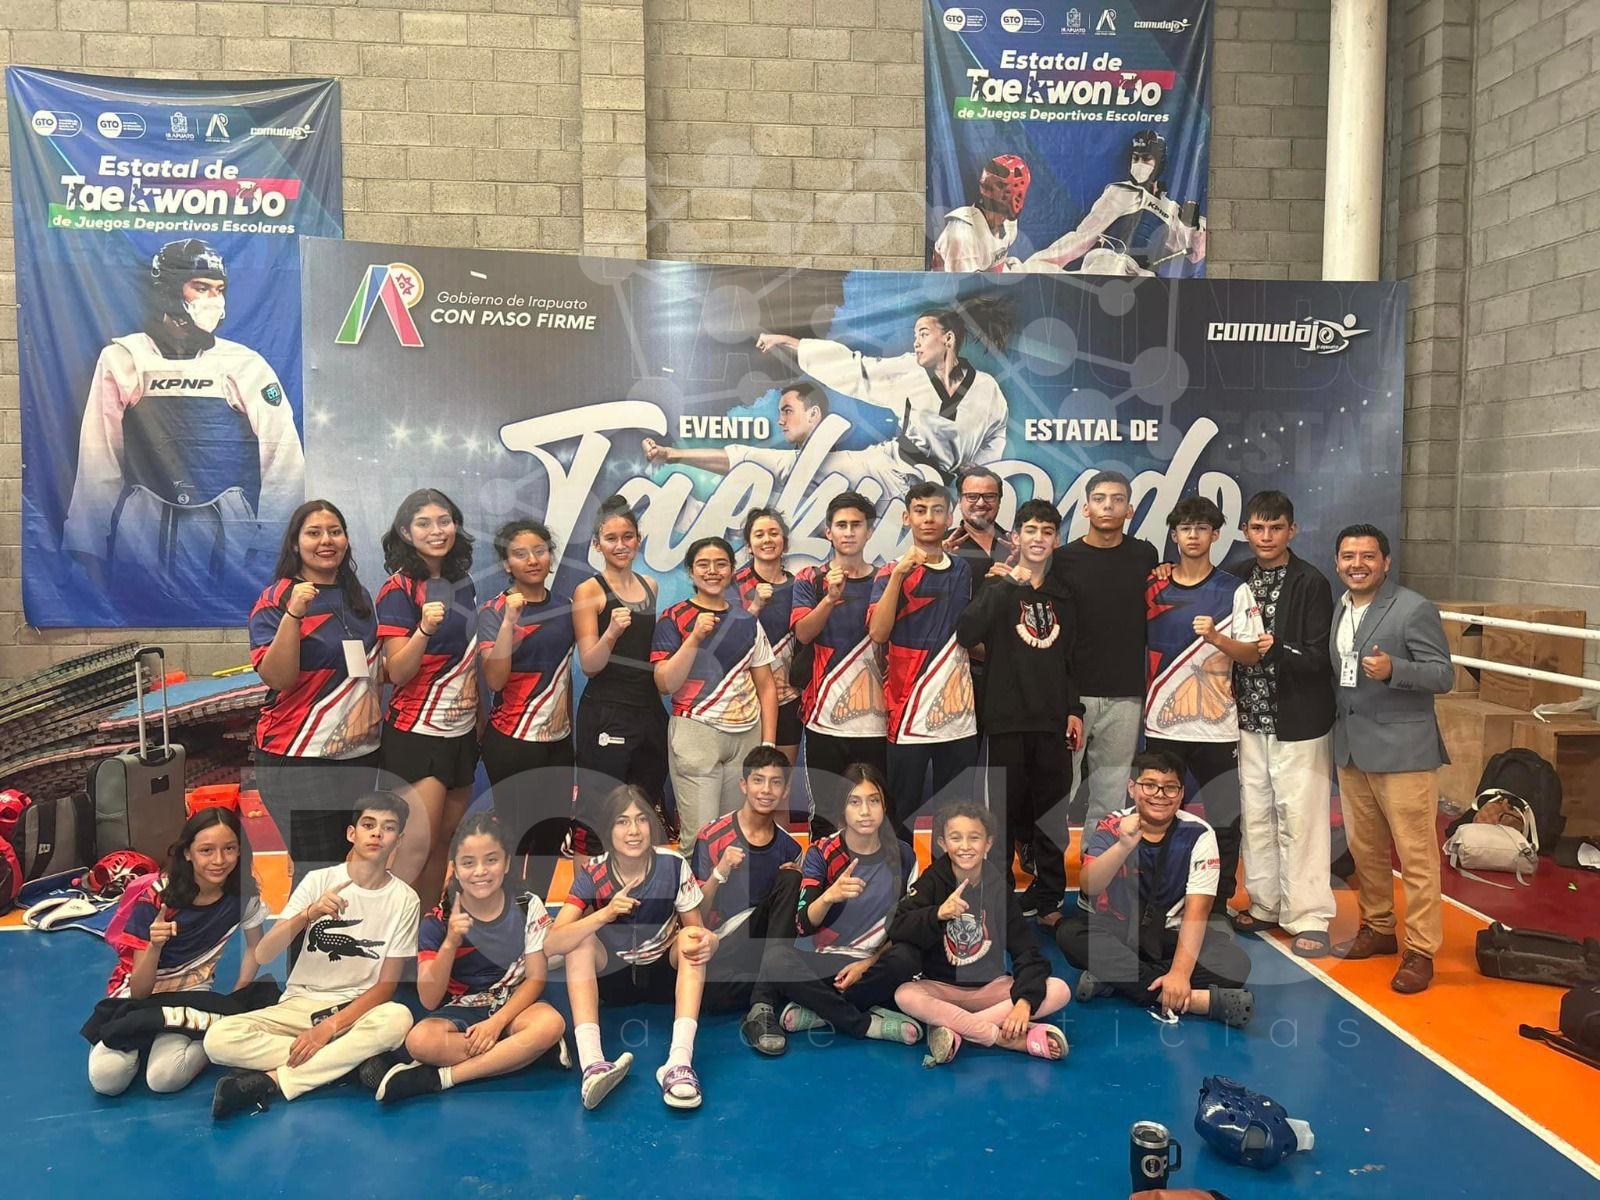 Óscar Vargas, el entrenador de taekwondo que logró la convocatoria de 8 atletas